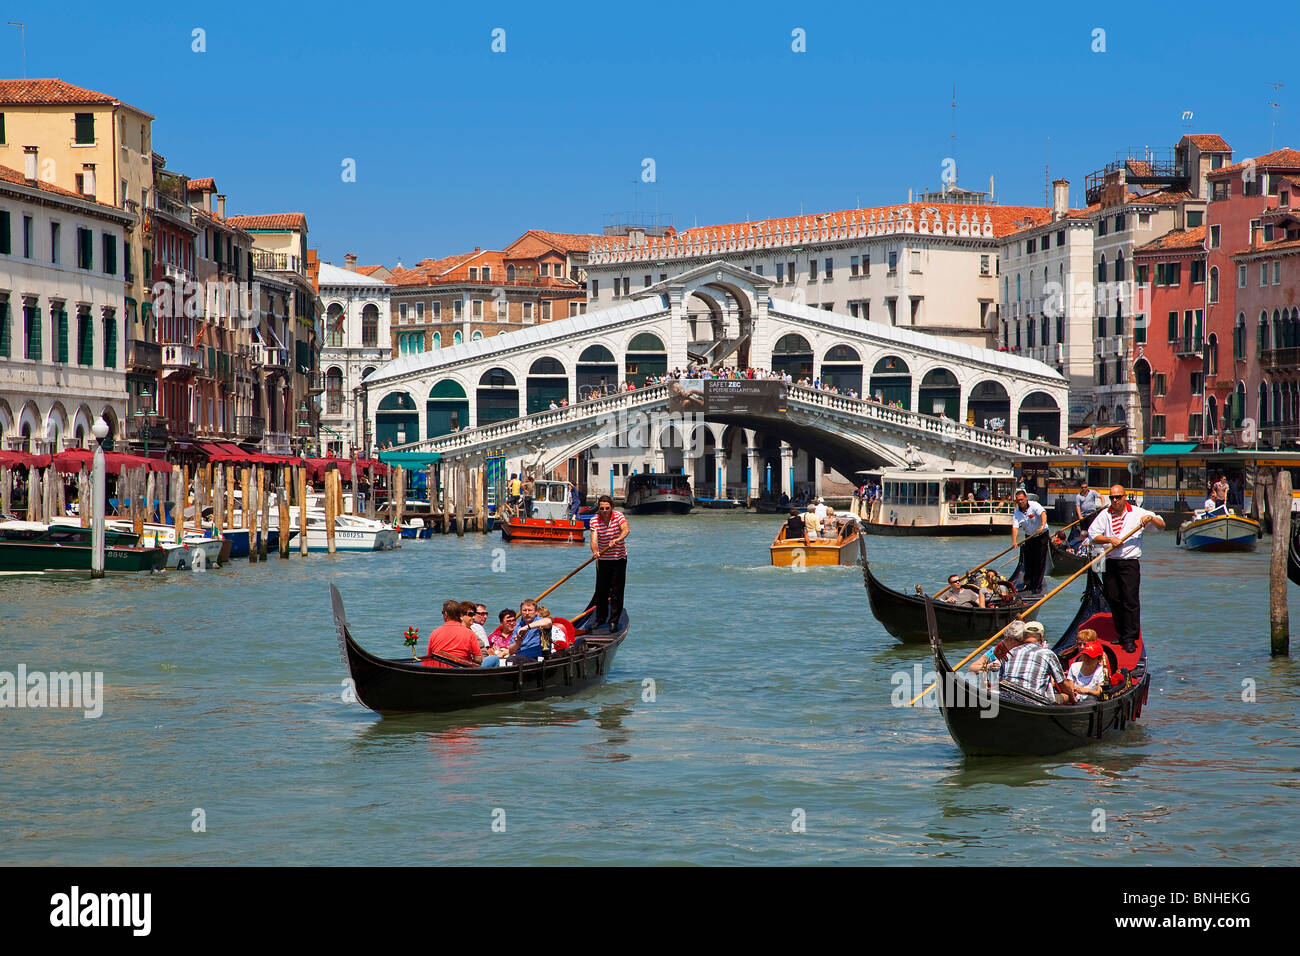 Europa, Italien, Venezia, Venedig, aufgeführt als Weltkulturerbe der UNESCO, der Rialto-Brücke und der Canal grande Stockfoto